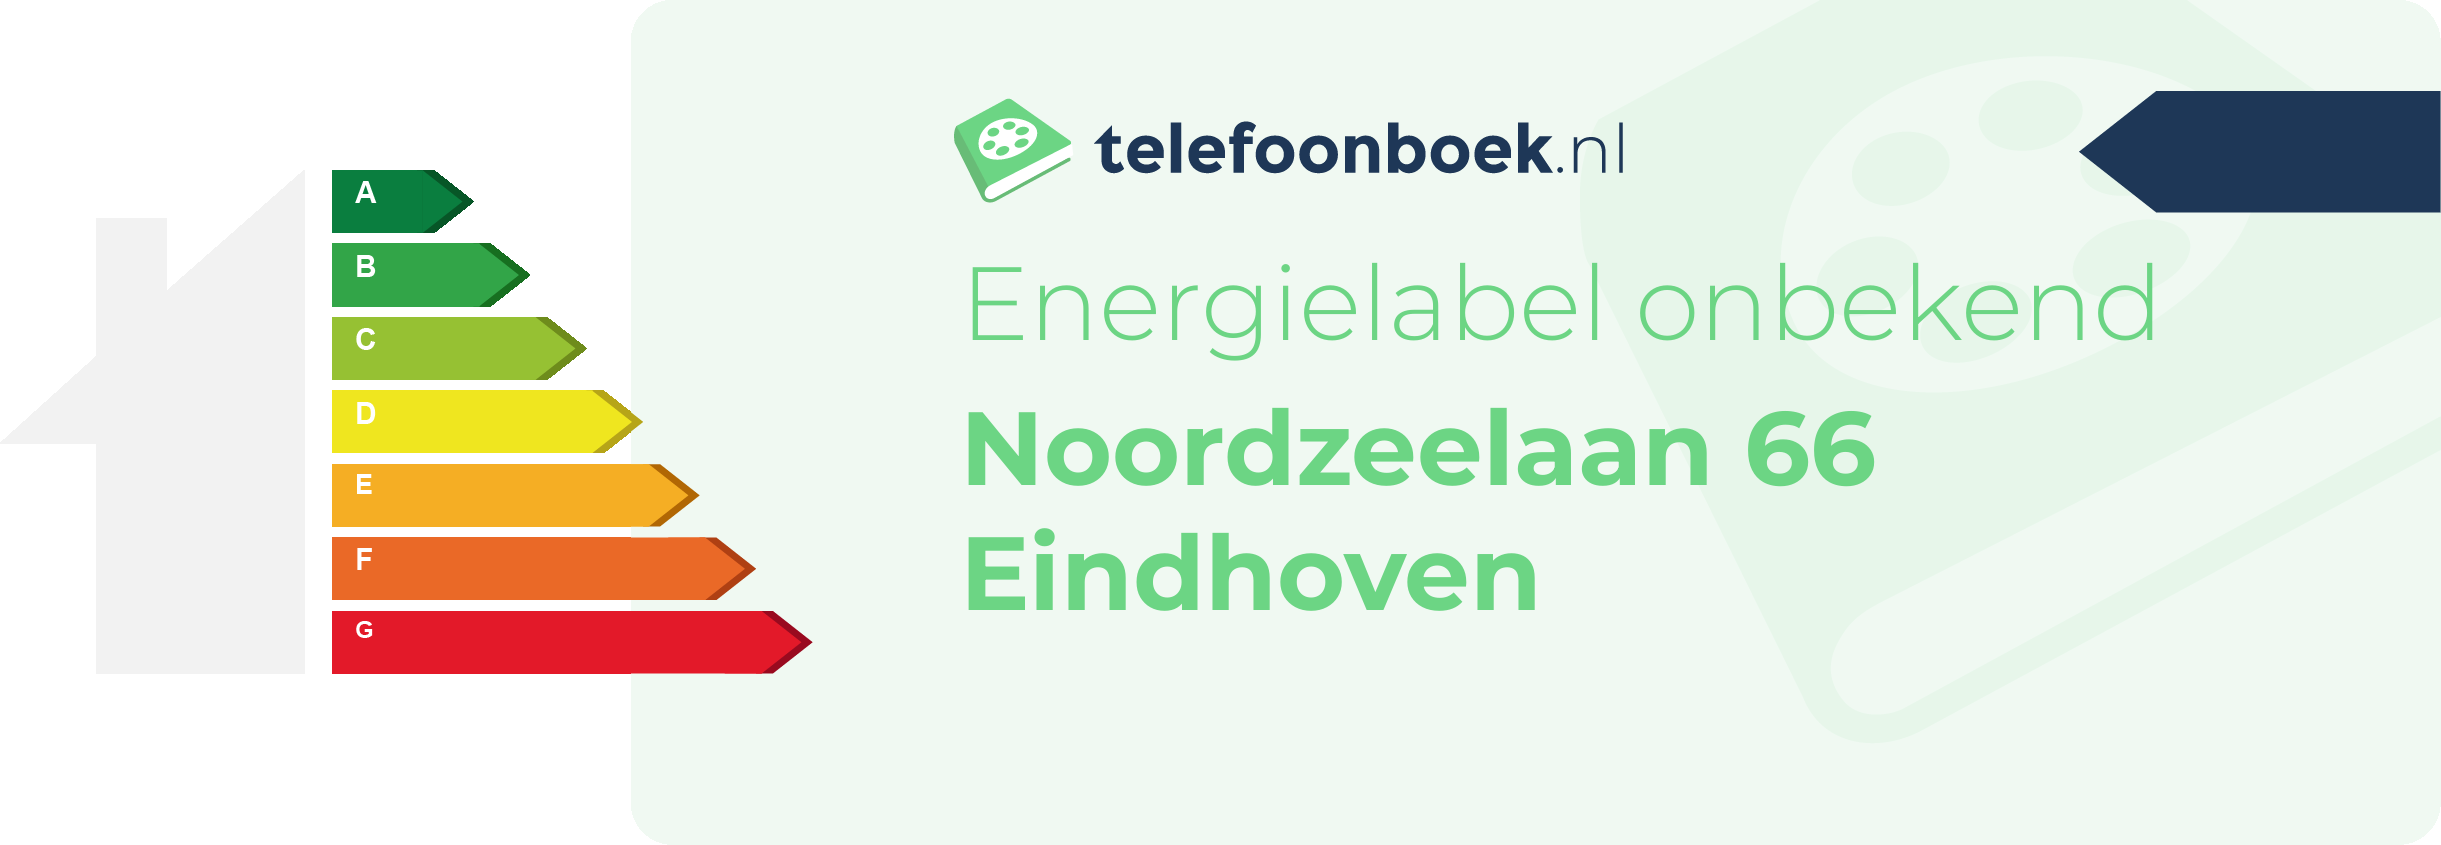 Energielabel Noordzeelaan 66 Eindhoven